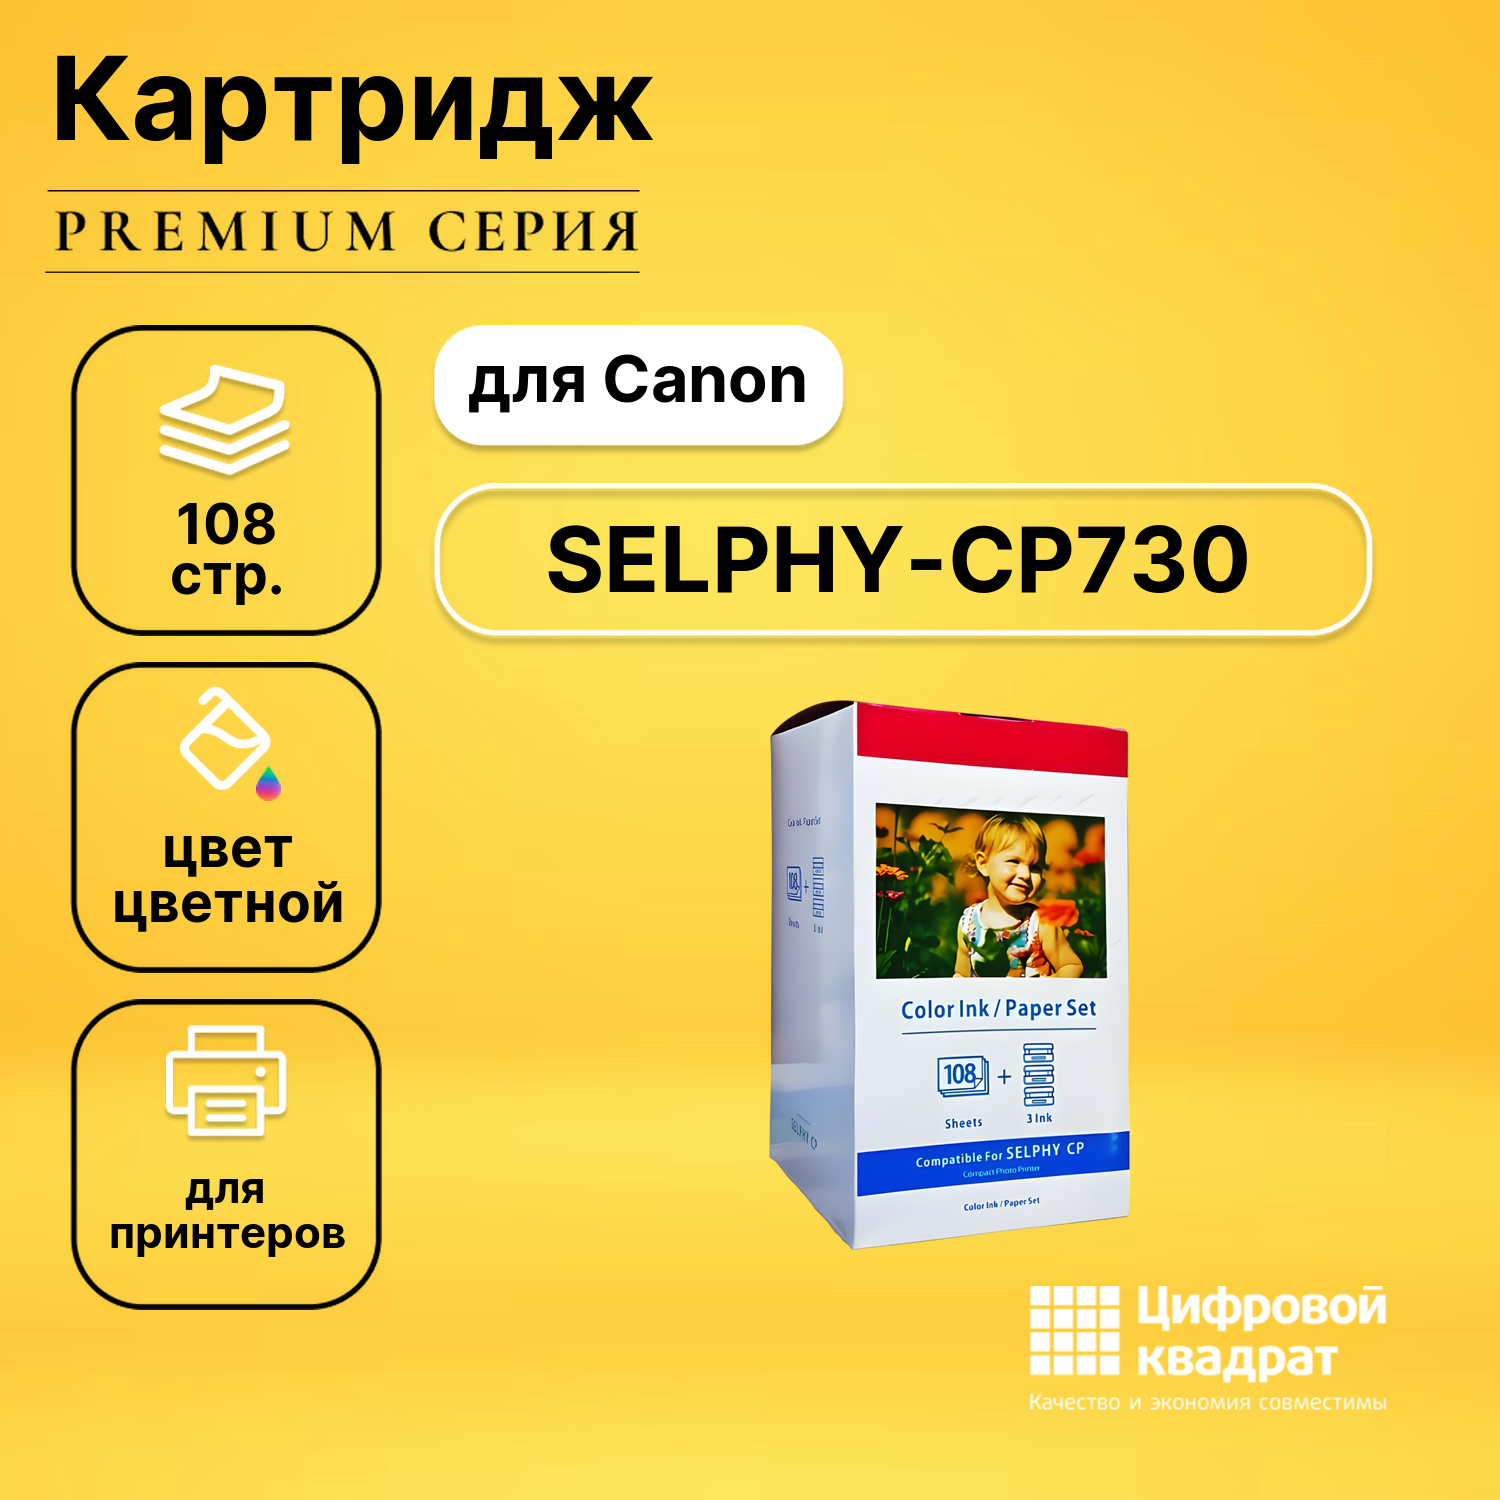 Набор для печати SELPHY-CP730 для Canon 3 картриджа + фотобумага, 108 листов совместимый